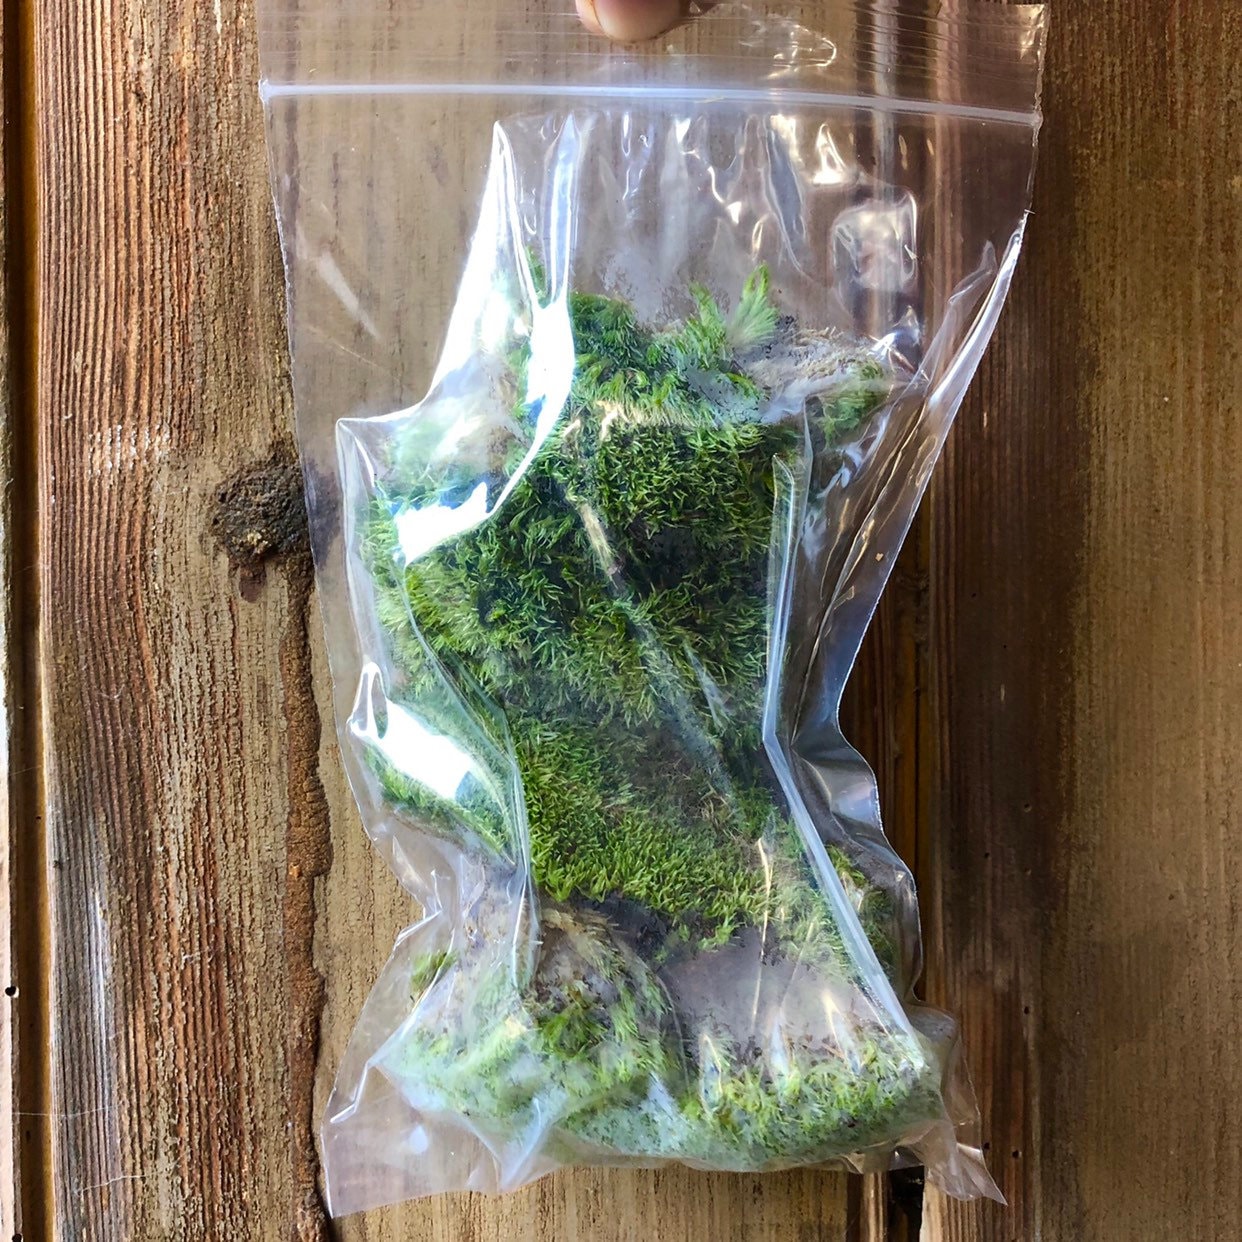 Live Cushion Moss | Premium Fresh Live Moss for Terrarium • Bun Moss •  Pillow Moss